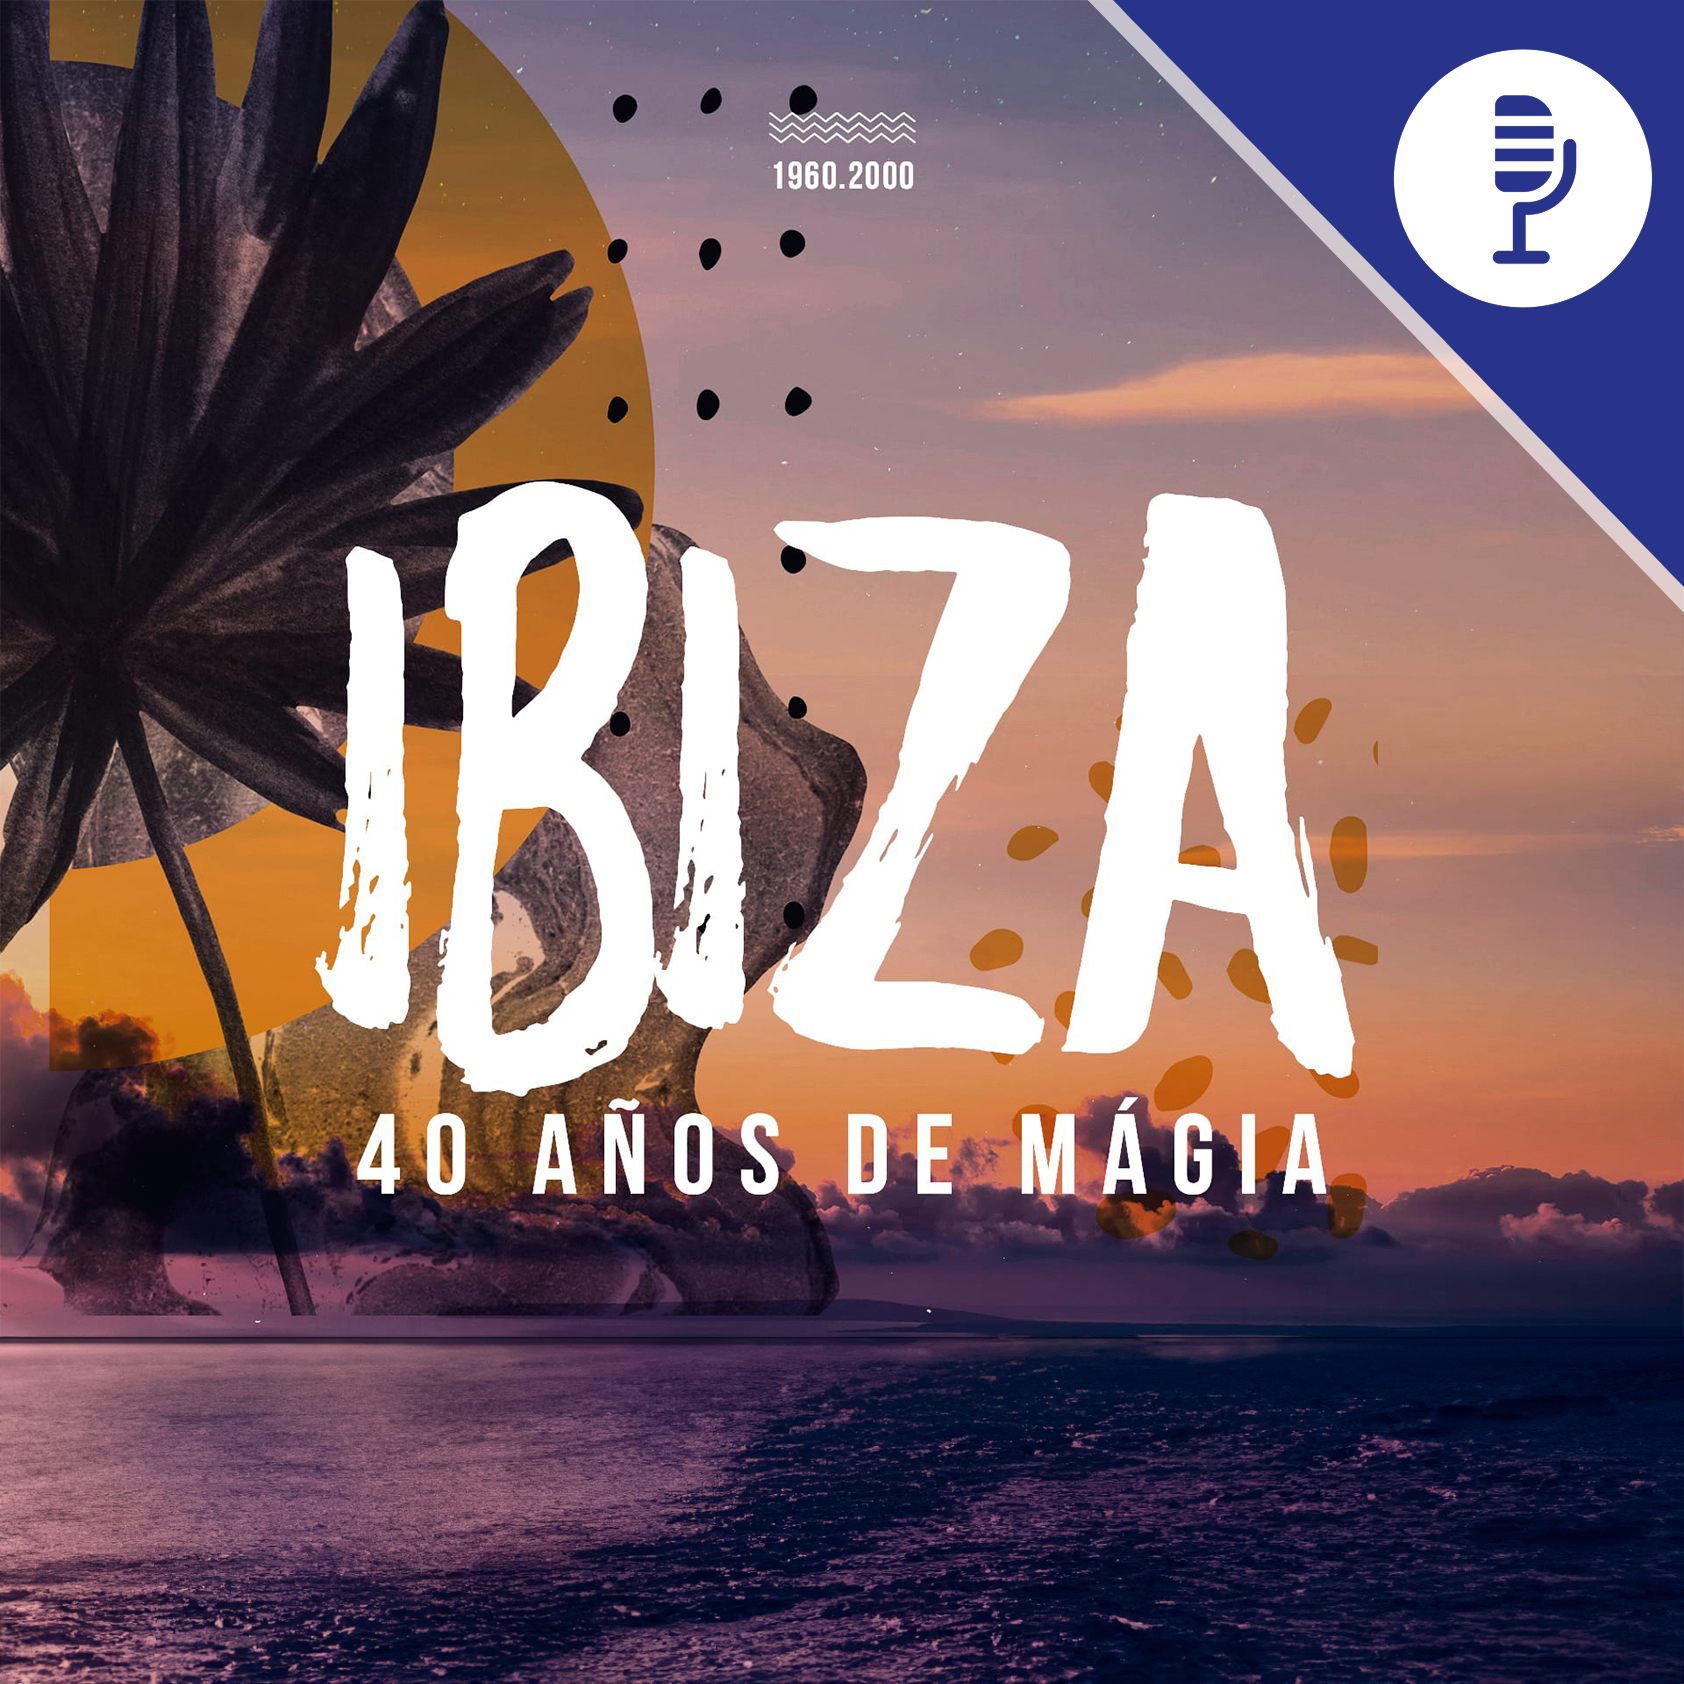 Hubo un tiempo en que los sueños habitaban en una isla: Ibiza, 40 años de magia